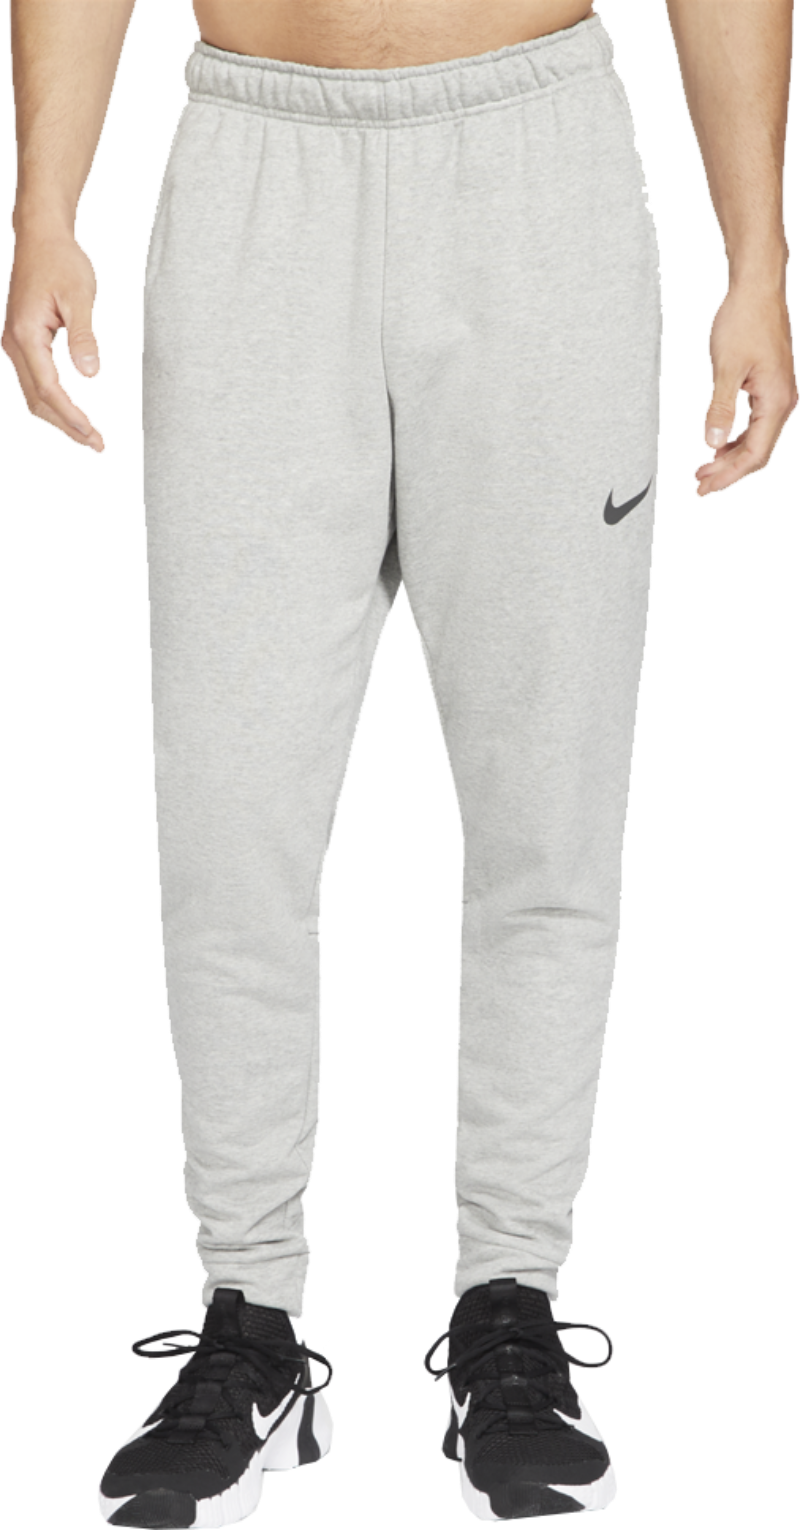 Nike - Dri-FIT Tapered Training Pants DK Grey Heather/Black L